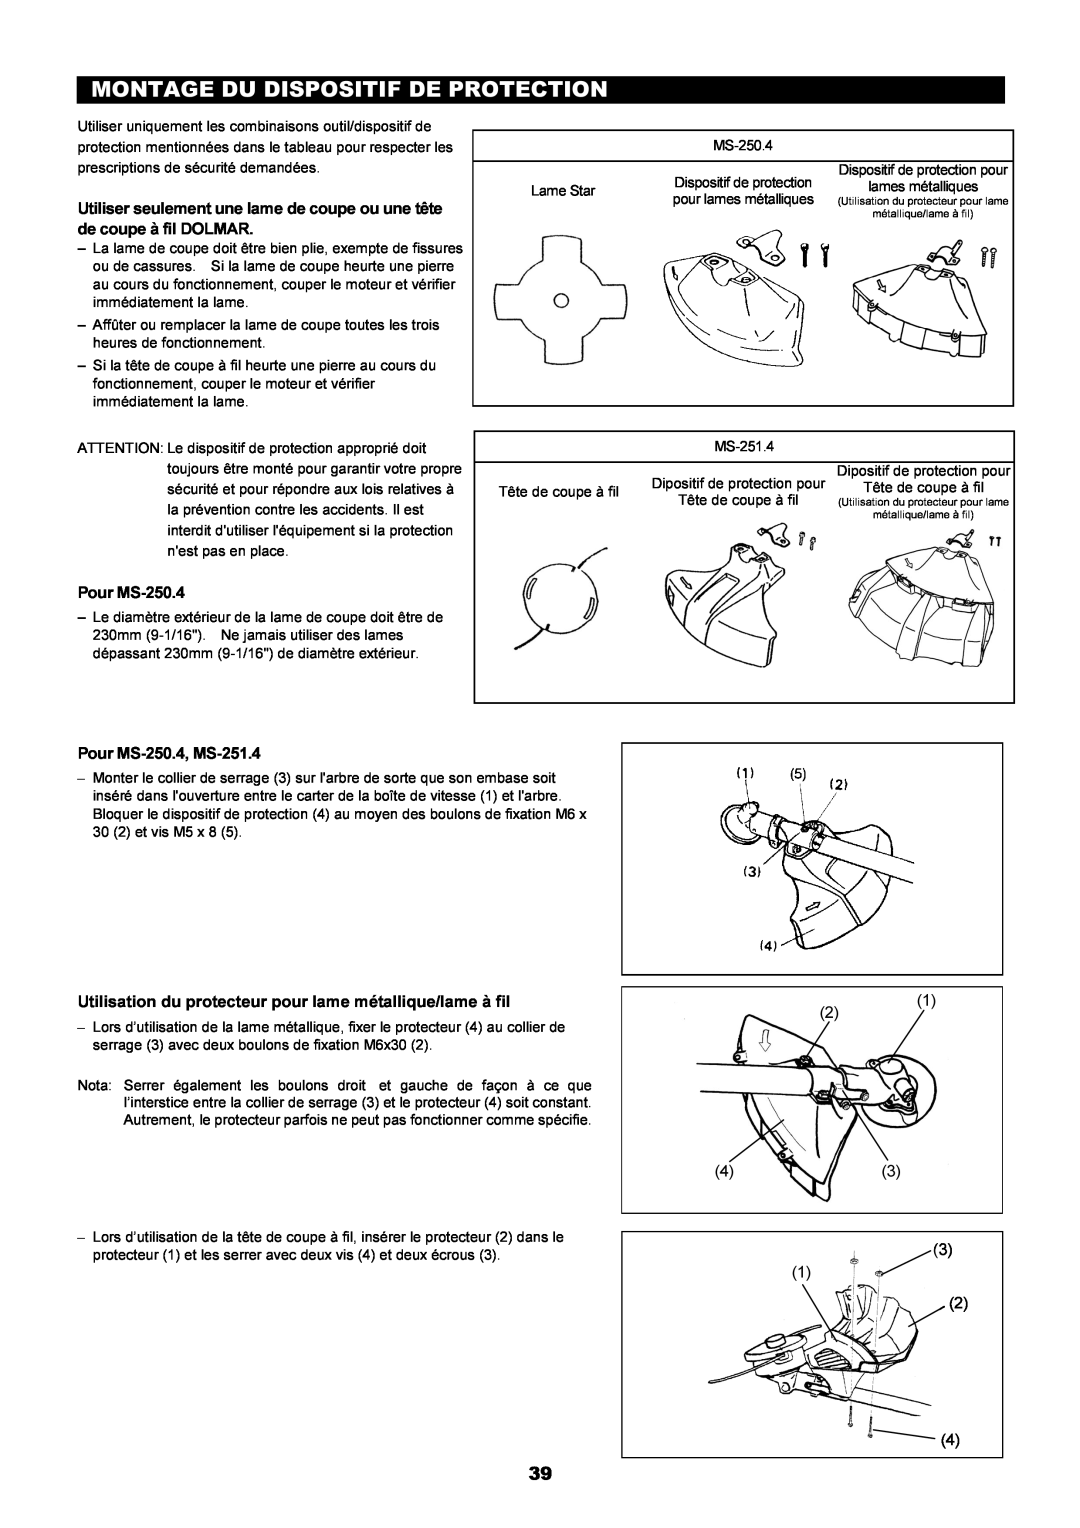 Dolmar instruction manual Montage Du Dispositif De Protection, Pour MS-250.4, MS-251.4 